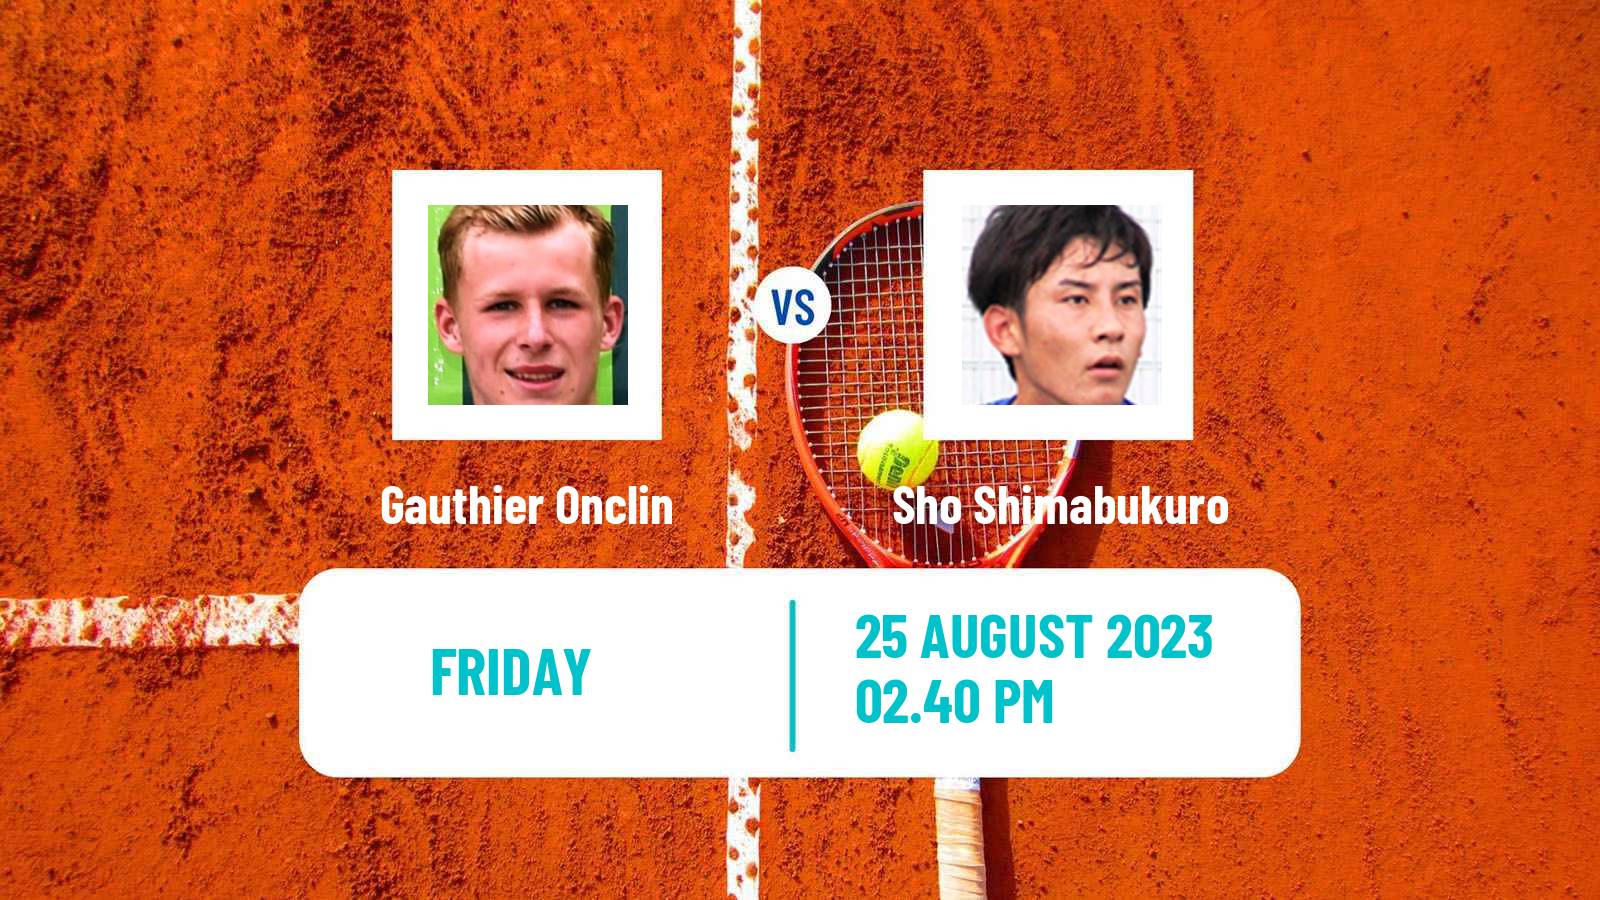 Tennis ATP US Open Gauthier Onclin - Sho Shimabukuro